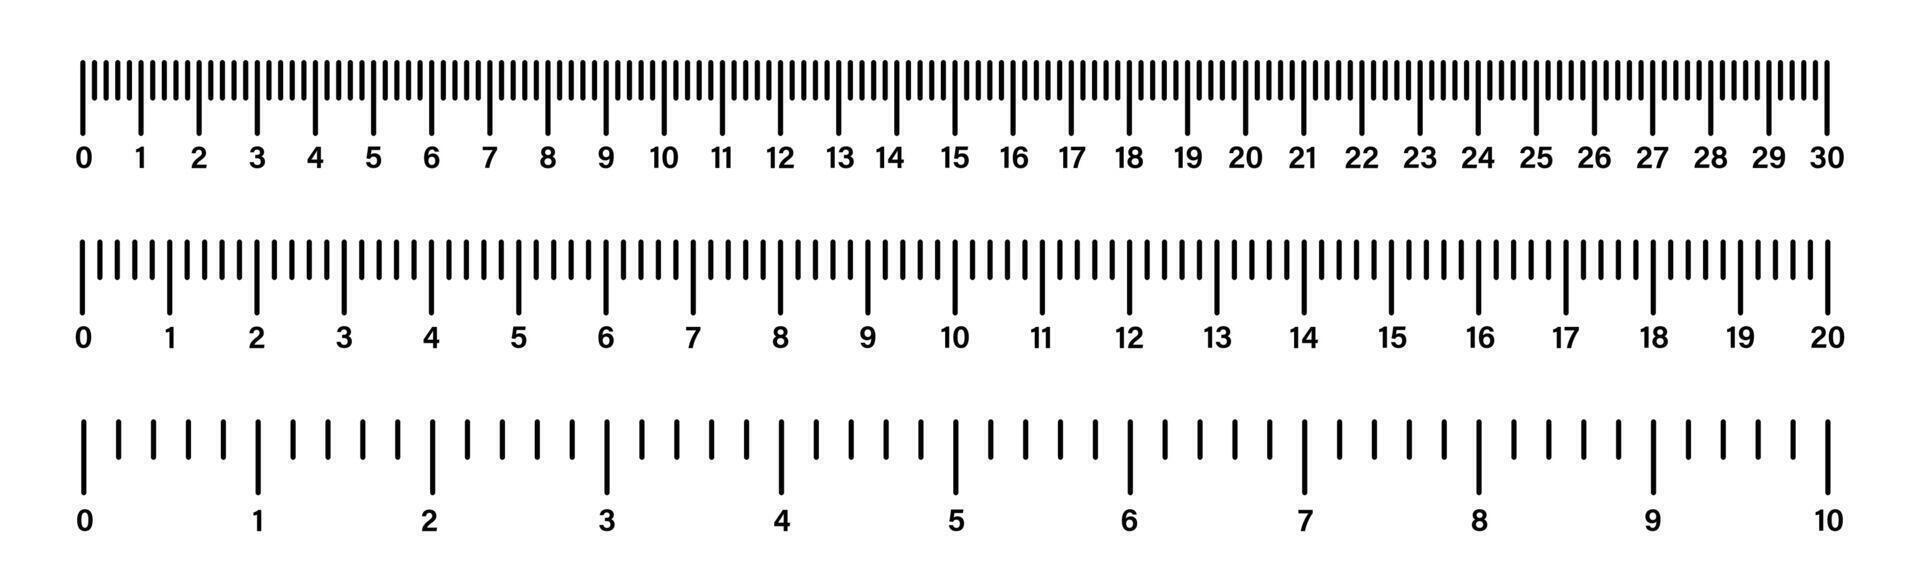 heerser schaal. meten hulpmiddel. grootte indicator eenheden. heerser schaal meeteenheid. lengte meting vector